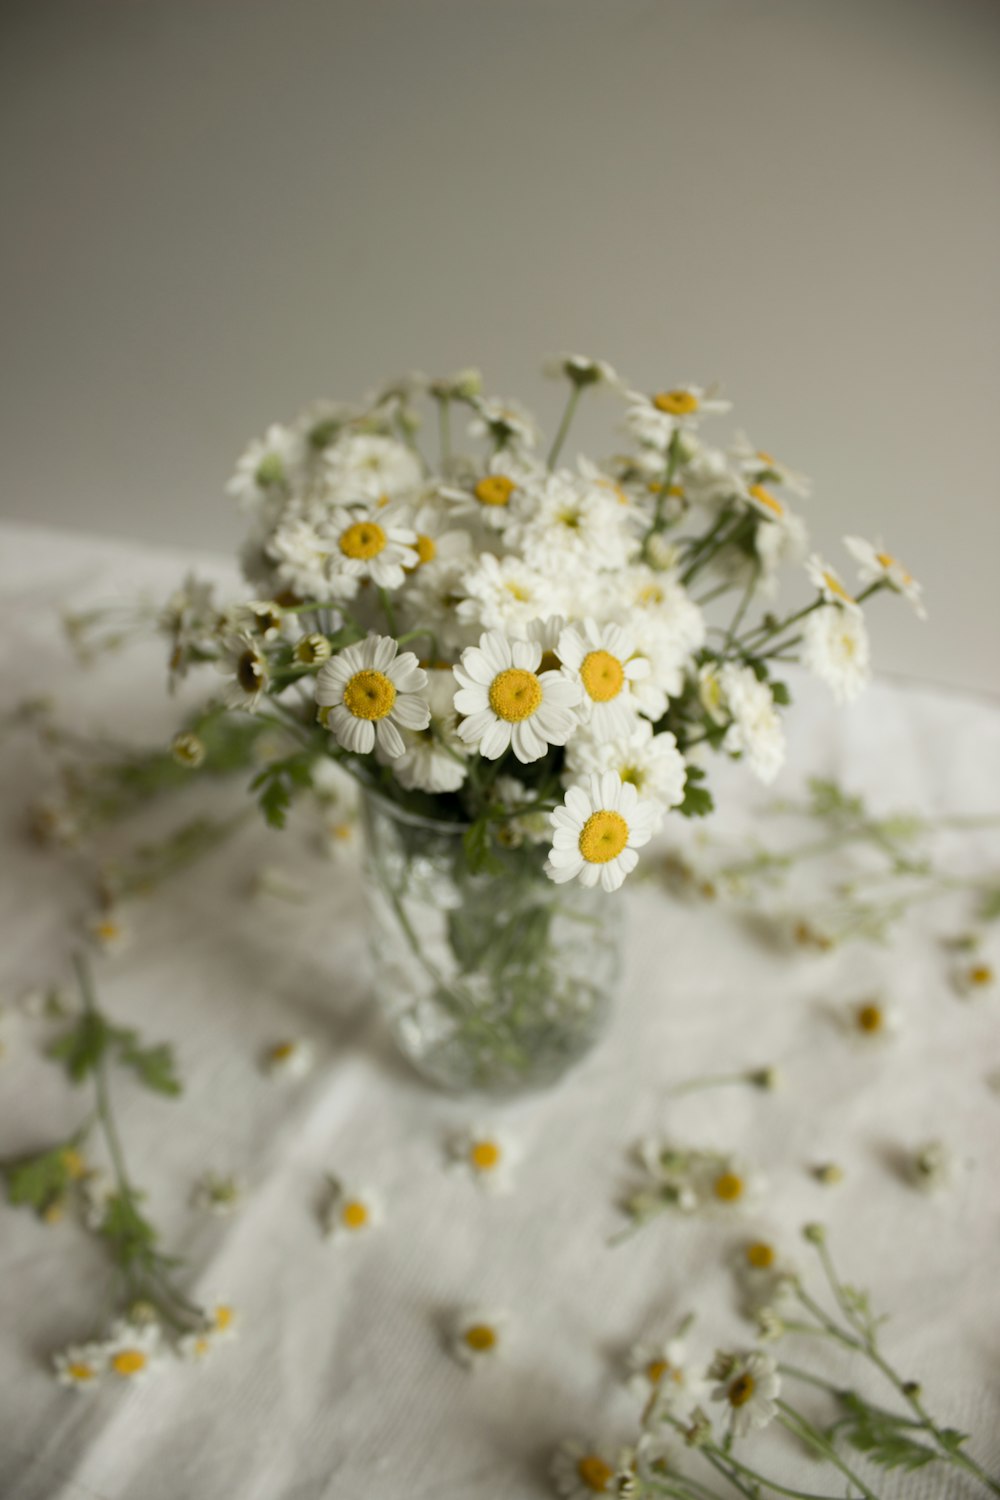 flores blancas en jarrón de vidrio transparente